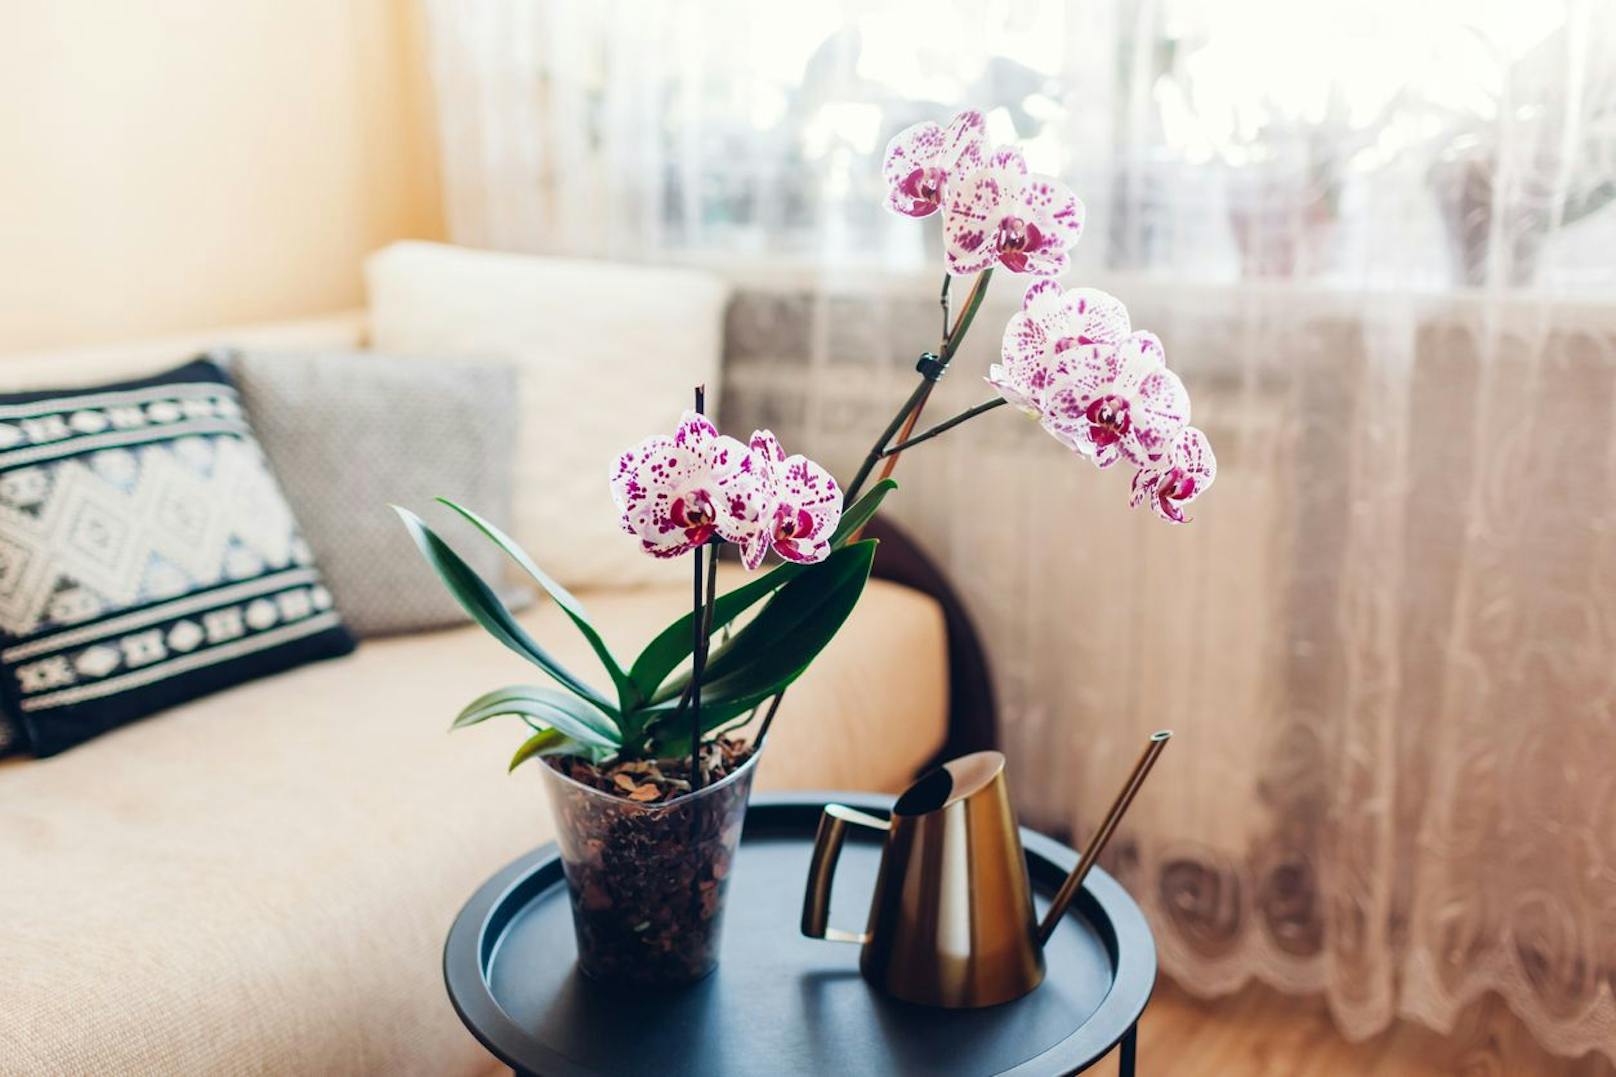 Orchideen können nur überleben, wenn sie von viel Feuchtigkeit umgeben sind. Ein wenig vom Gewürz sorgt dafür, dass der Wachstum der Wurzeln gefördert wird. 